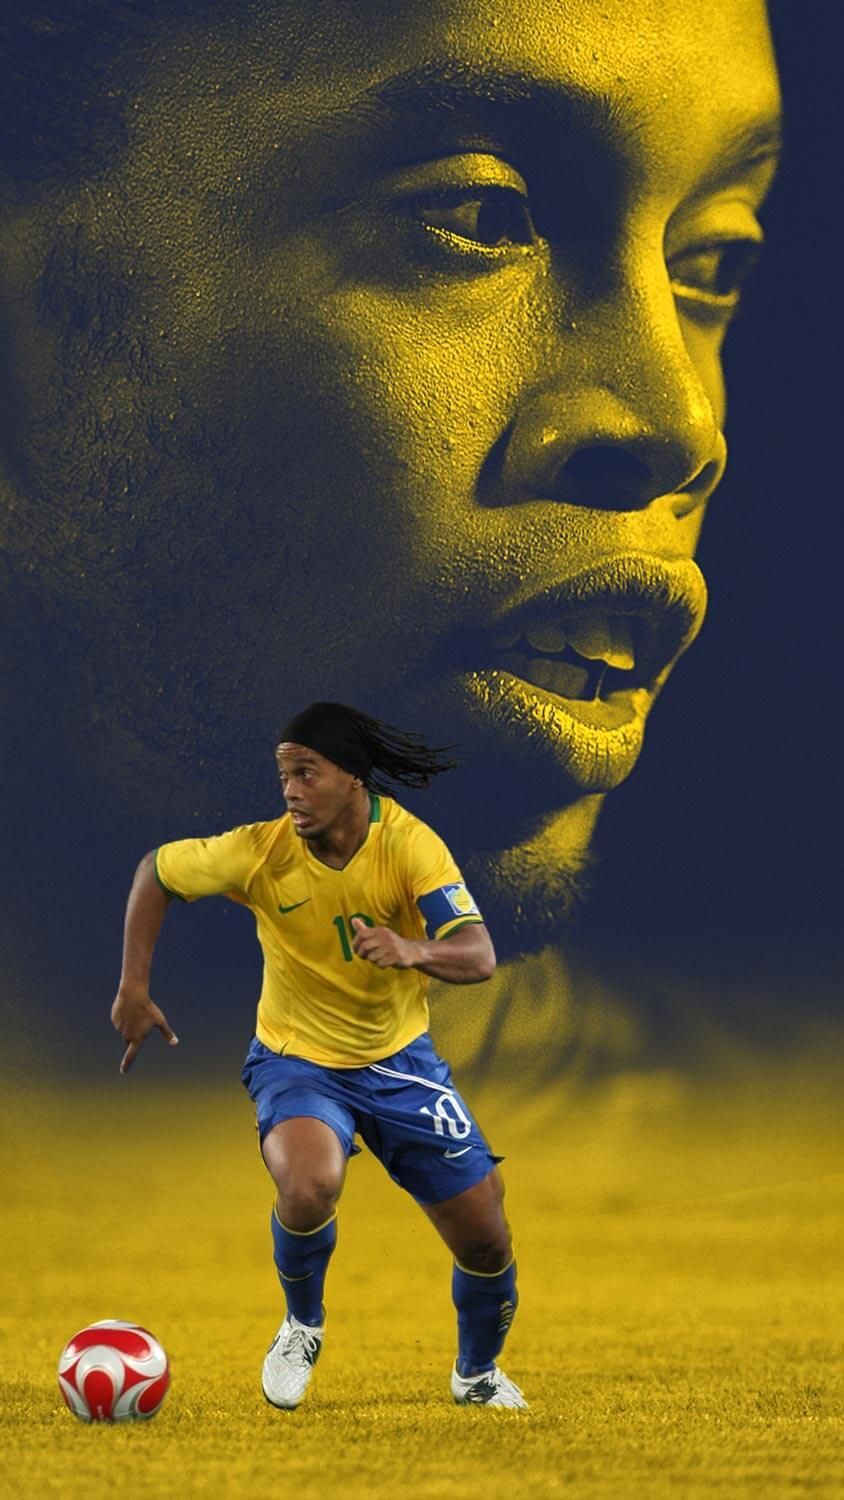 Ronaldinho wallpaper. Imagens de futebol, Cartaz de futebol, Jogadores de futebol